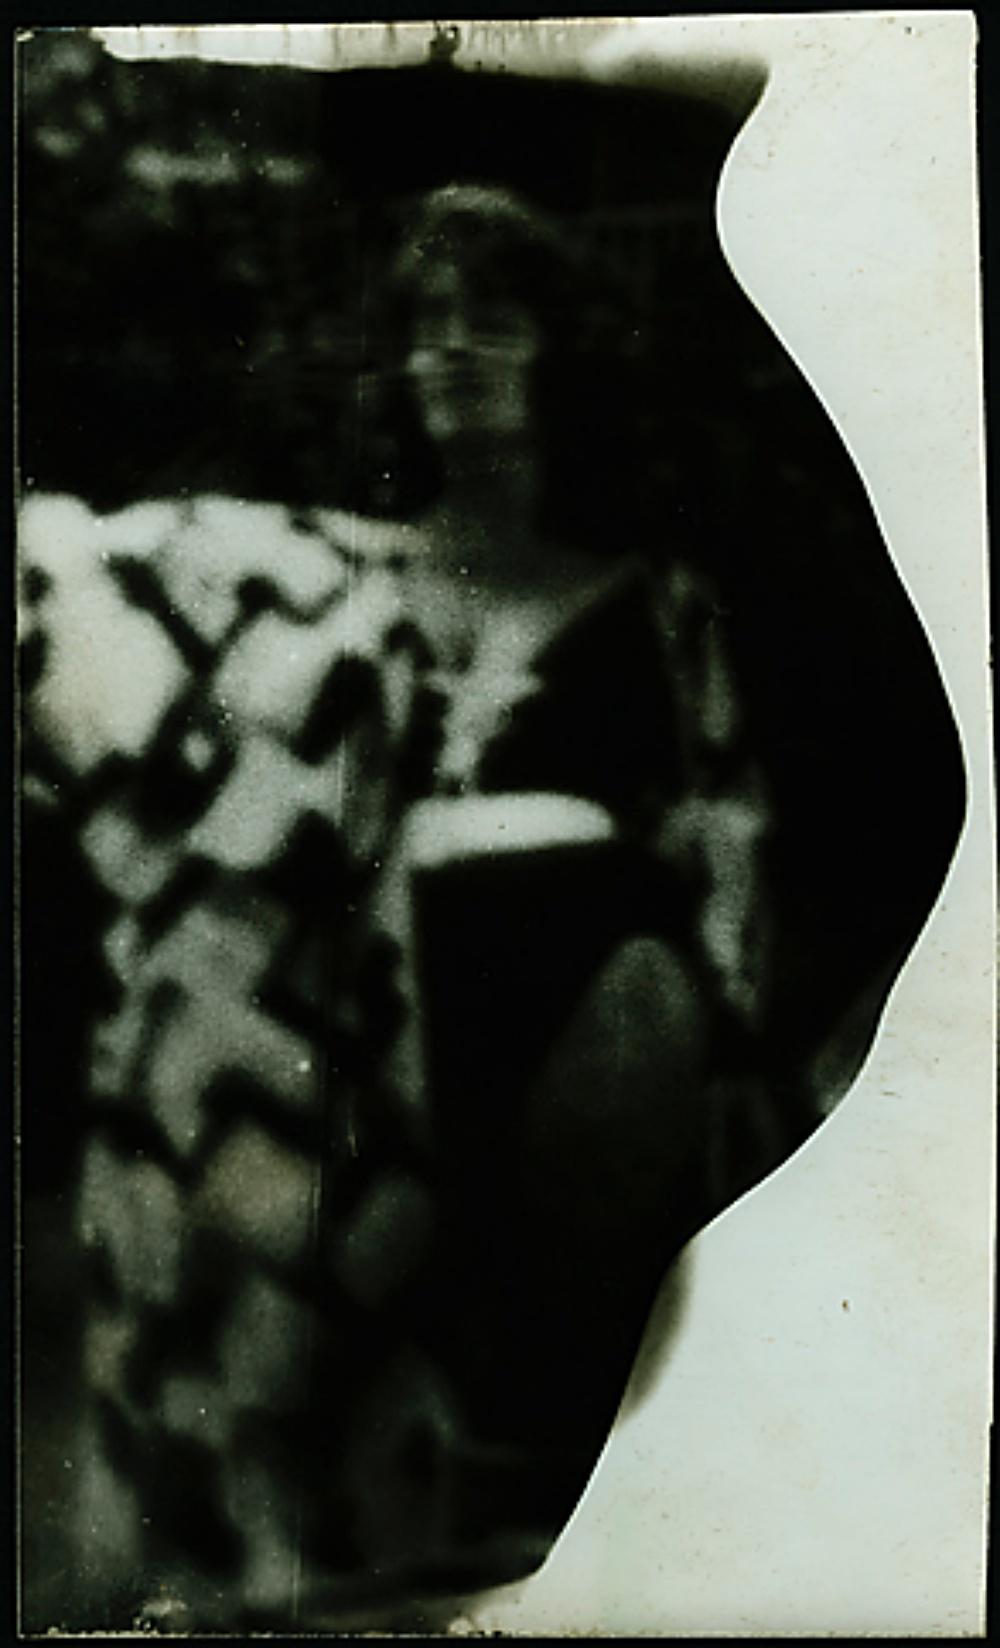 Miroslav Tichý (*1926, République tchèque) 
Sans titre, MT Inv. Non 7-6-88 
Inconnu, ca. 1970-1990
Tirage à la gélatine argentique 
Feuille 17 x 10,3 cm (6 3/4 x 4 in.)
Unique en son genre
Imprimer seulement

Tichý, qui réinvente pratiquement la